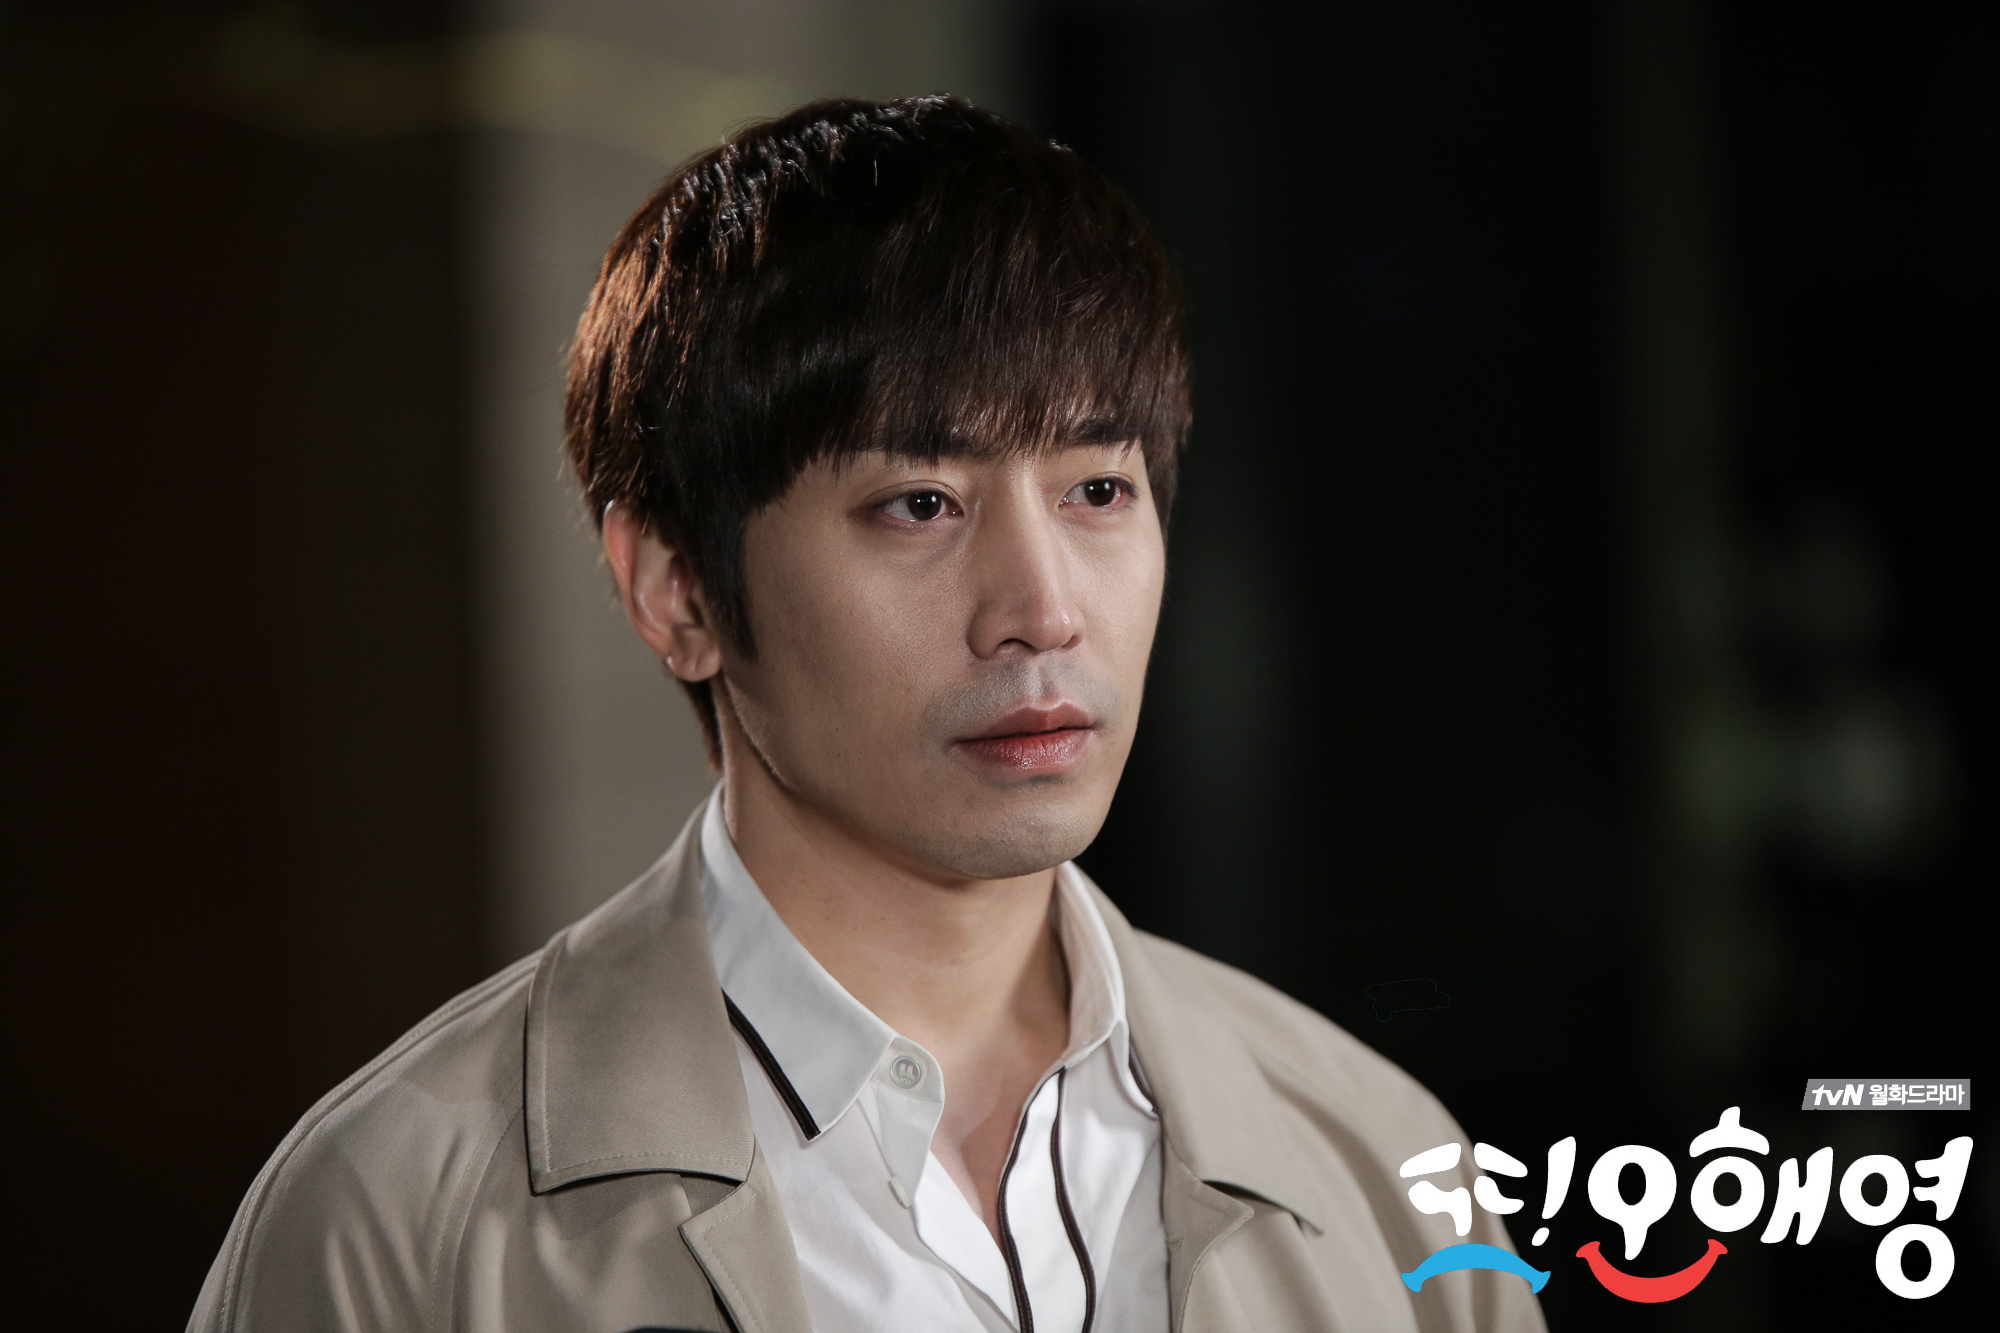 Nam chính tvN: Cuốn hút bất kể vẻ ngoài lung linh hay 